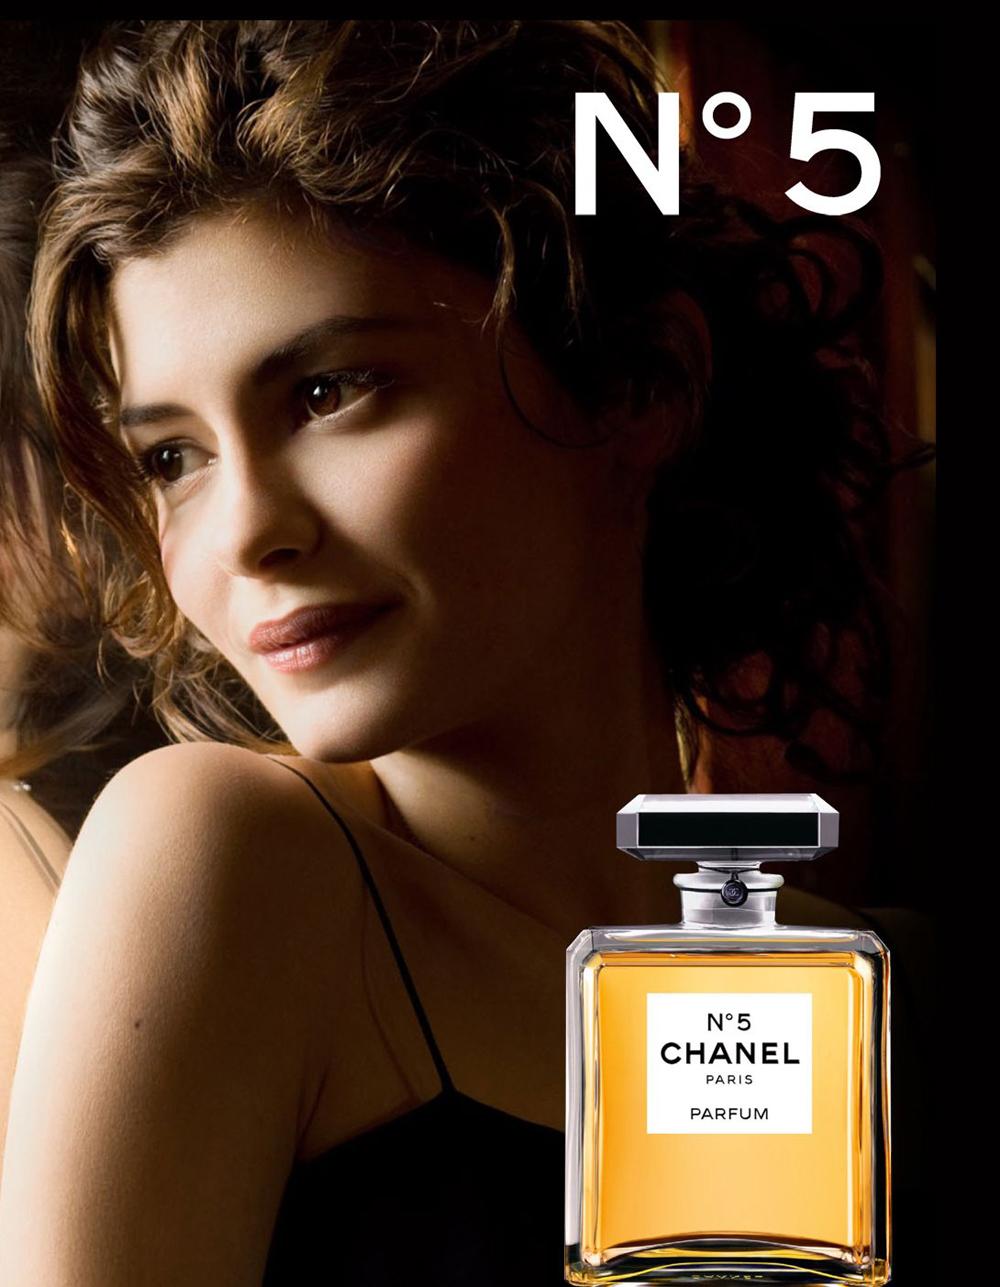 Chanel No5 EDP Gabriel Chanel'e benzeyen model Audrey Tautou tanıtım afişi.jpg